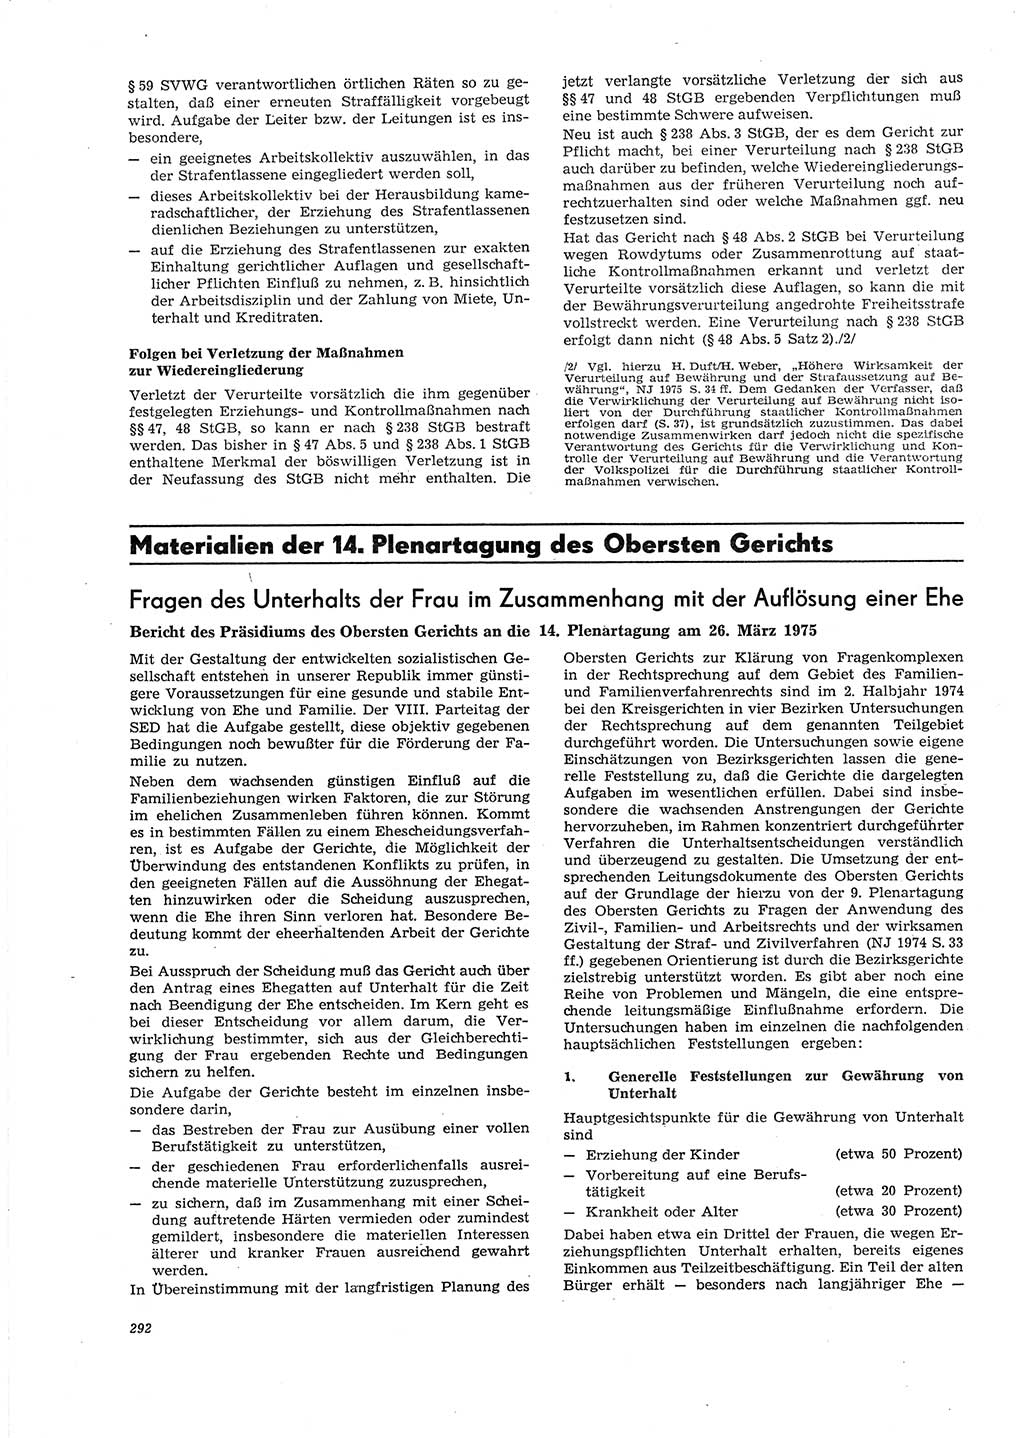 Neue Justiz (NJ), Zeitschrift für Recht und Rechtswissenschaft [Deutsche Demokratische Republik (DDR)], 29. Jahrgang 1975, Seite 292 (NJ DDR 1975, S. 292)